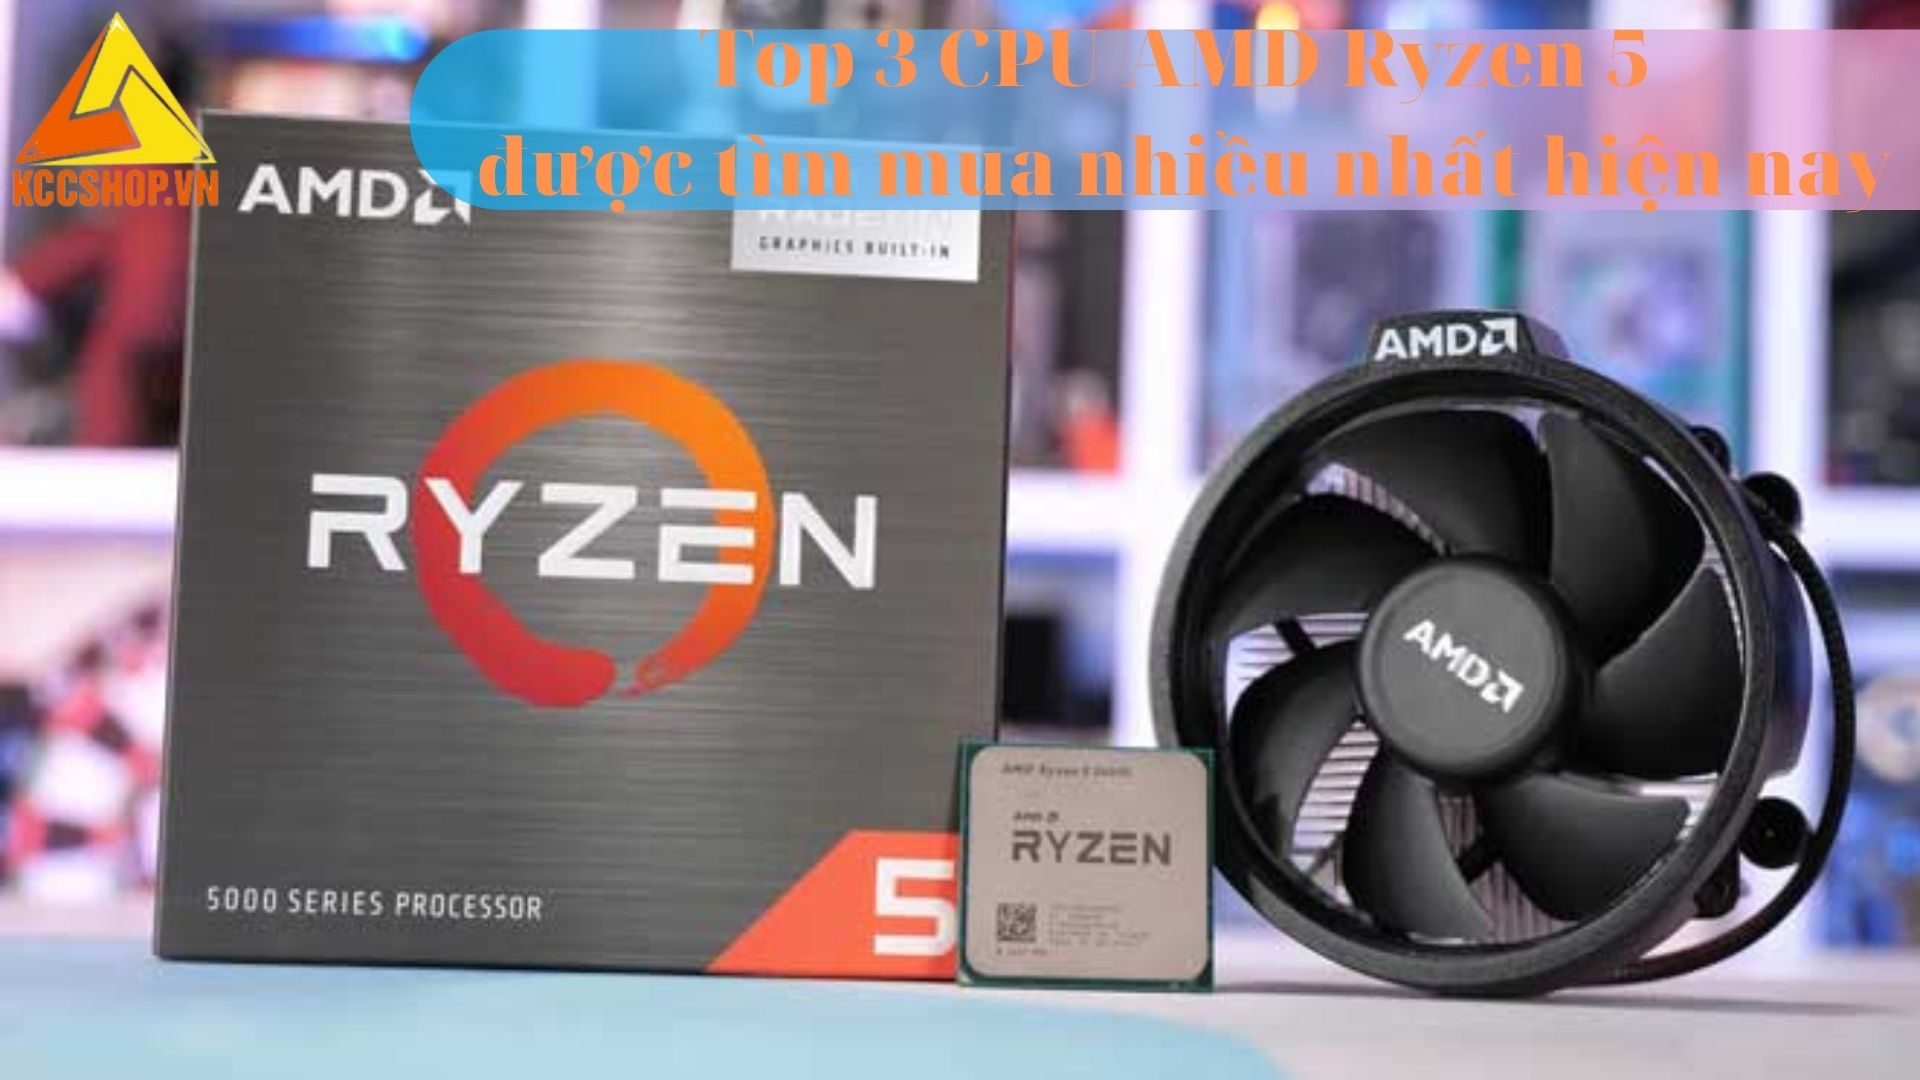 Top 3 CPU AMD Ryzen 5 được tìm mua nhiều nhất hiện nay